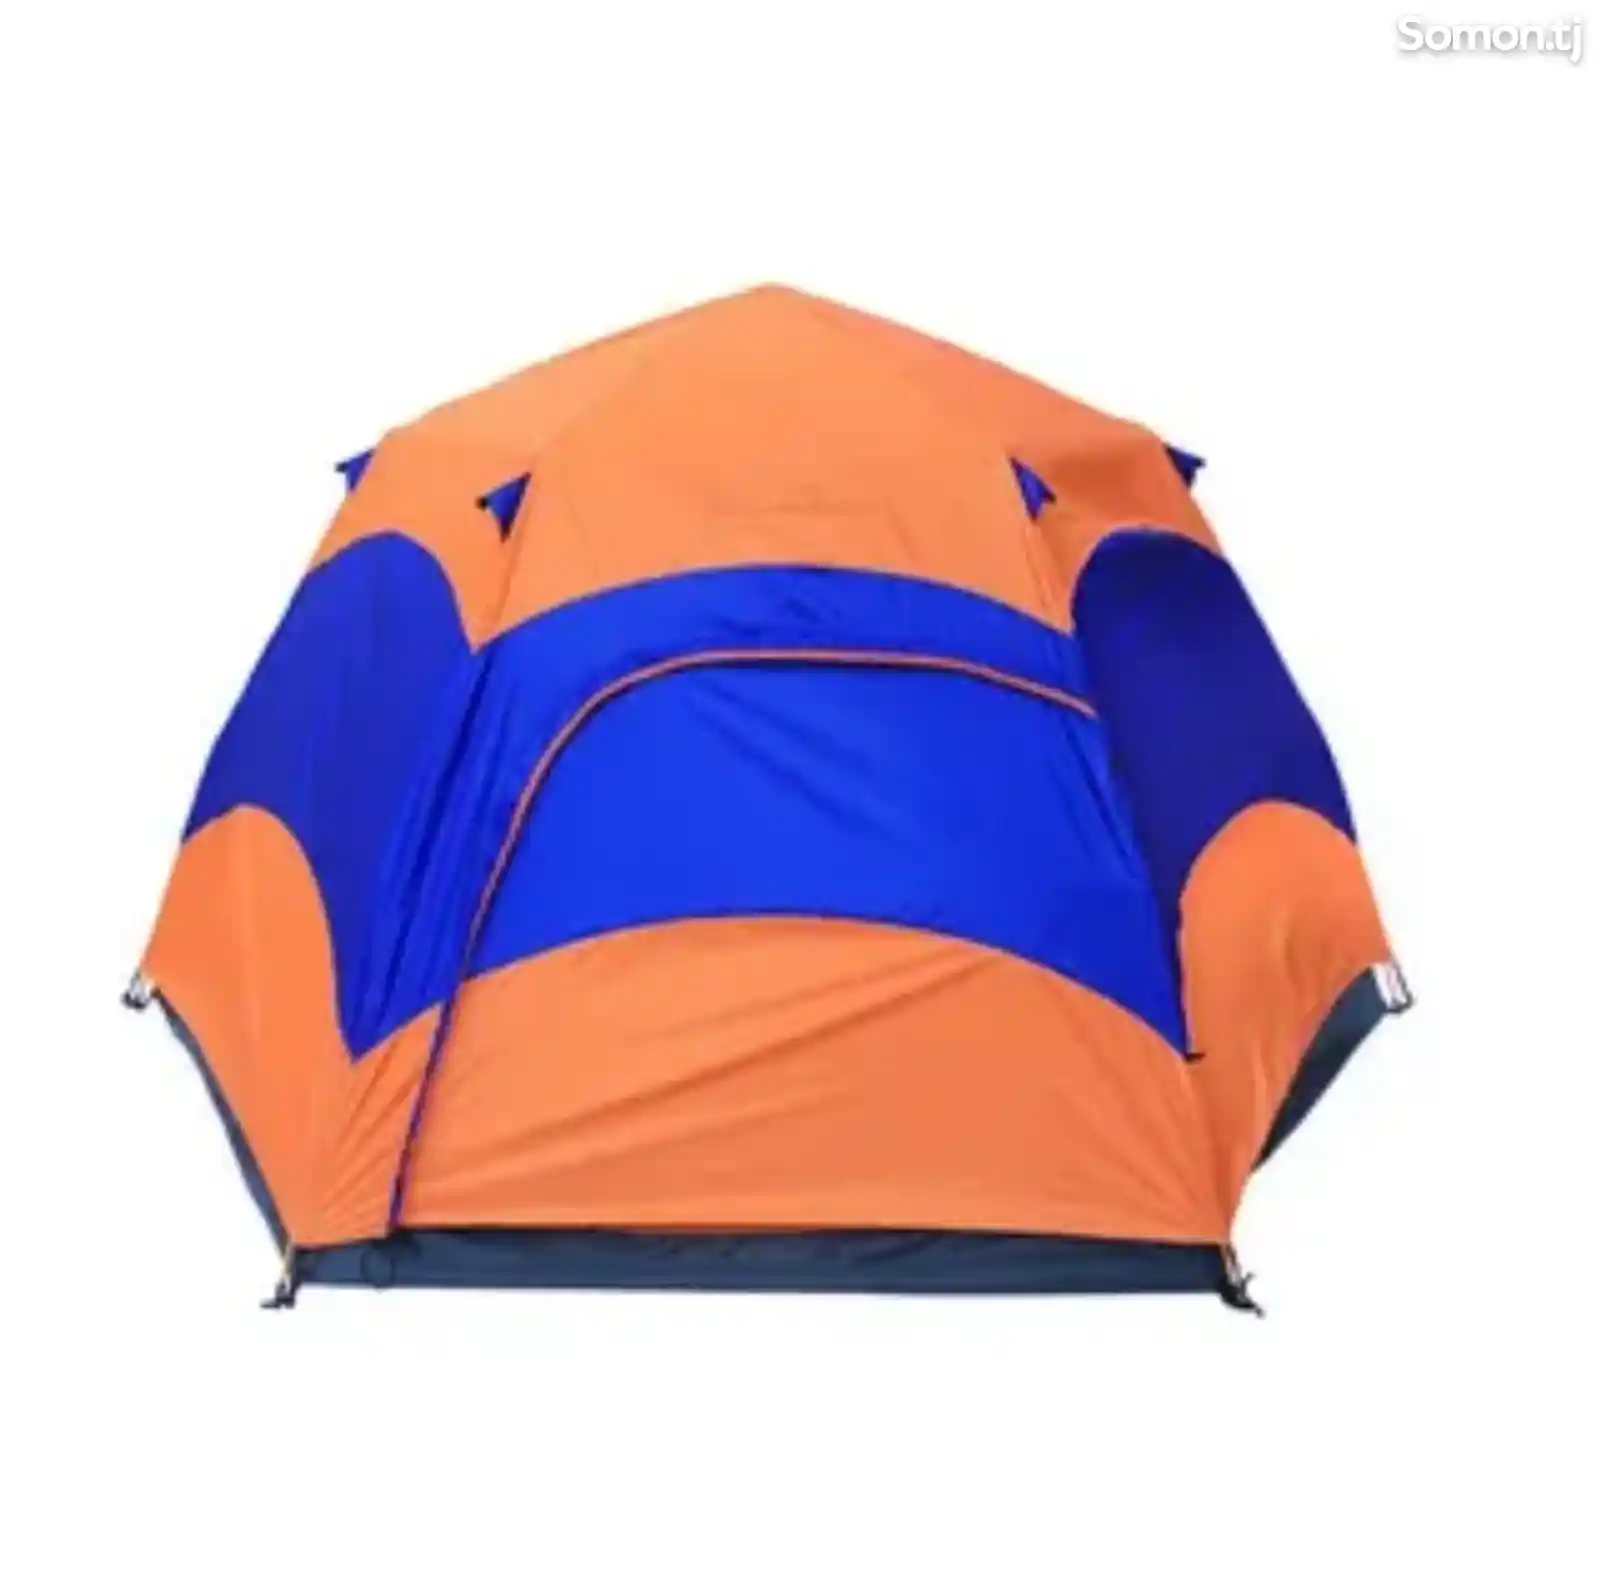 Семейная палатка SY-031-5